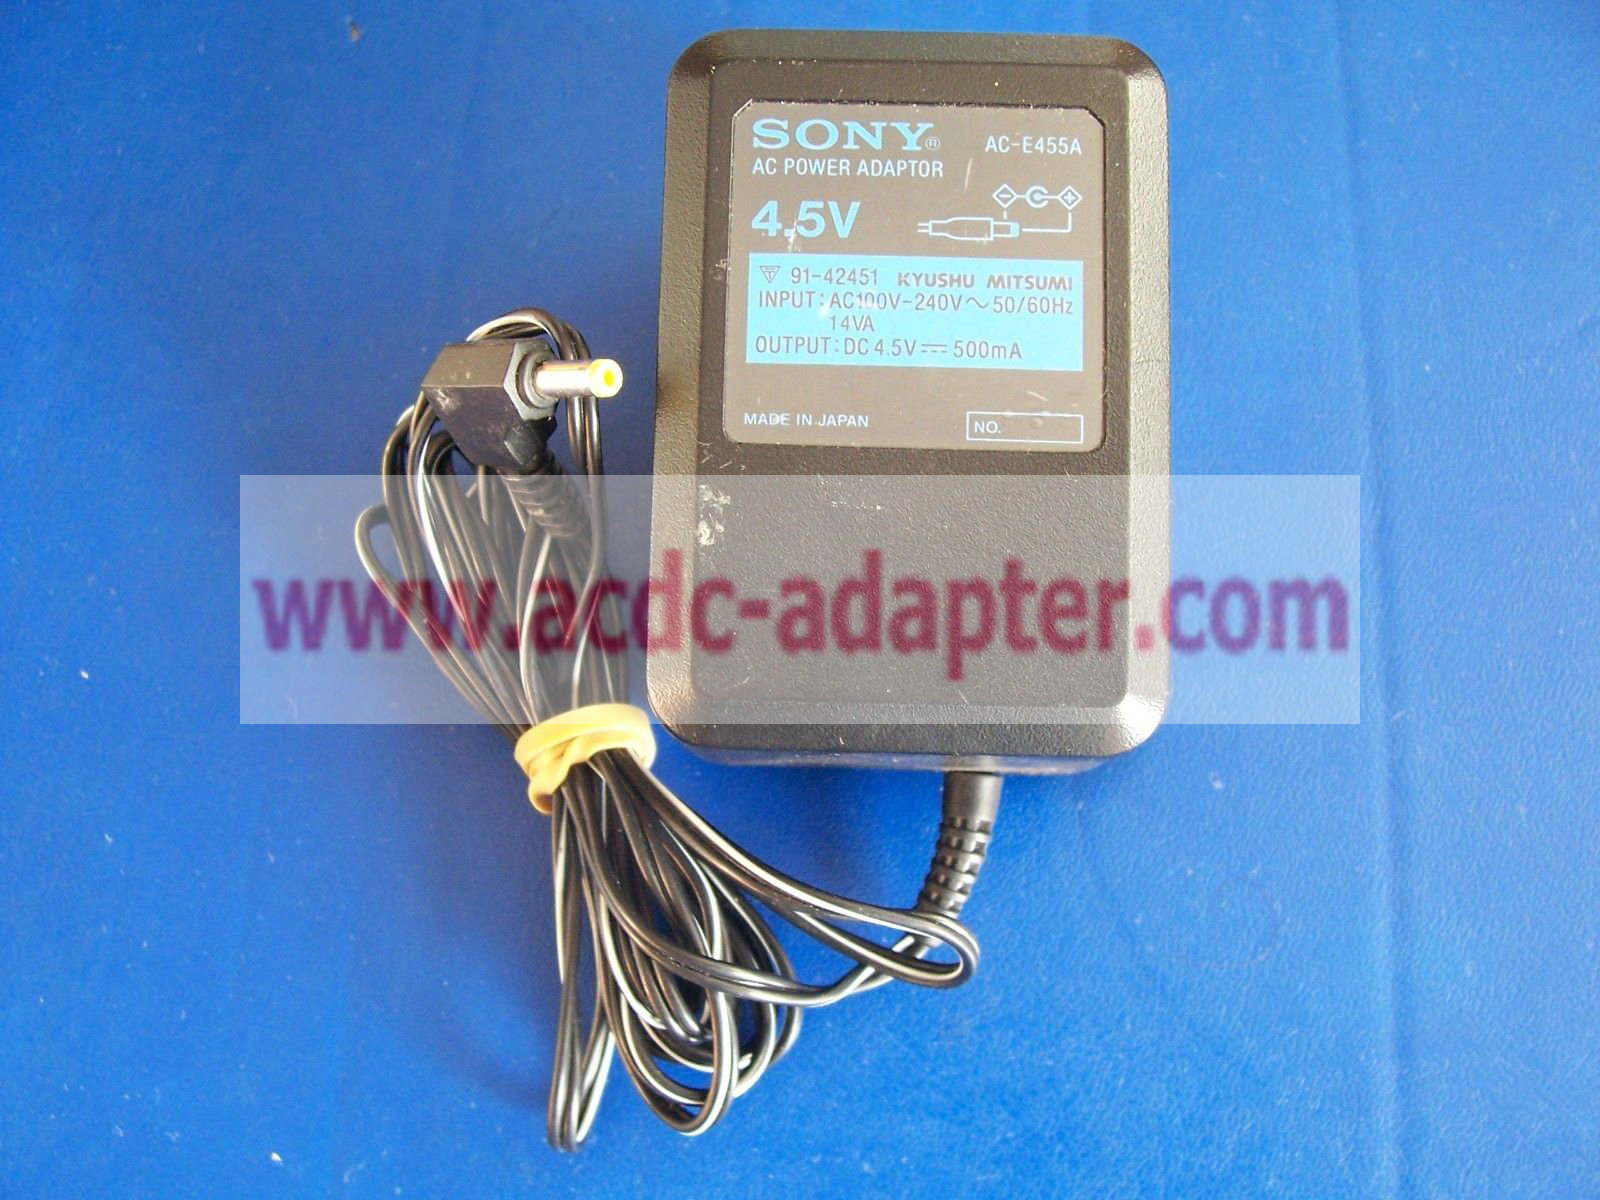 Genuine 4.5V 500mA Sony AC-E455A Power Adapter - Click Image to Close